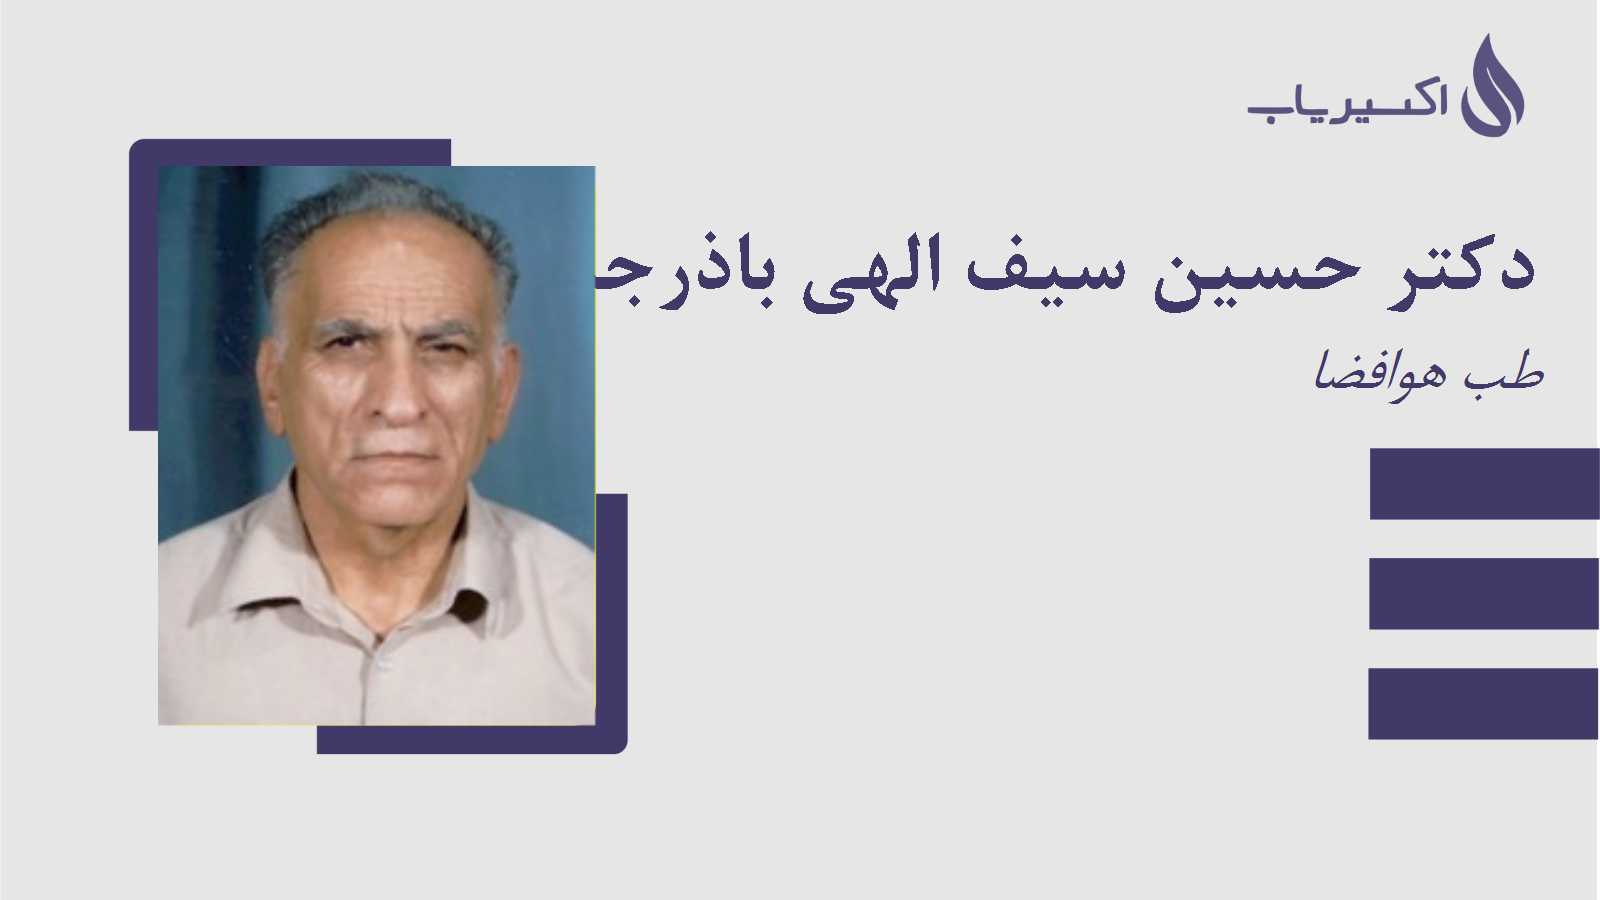 مطب دکتر حسین سیف الهی باذرجانی